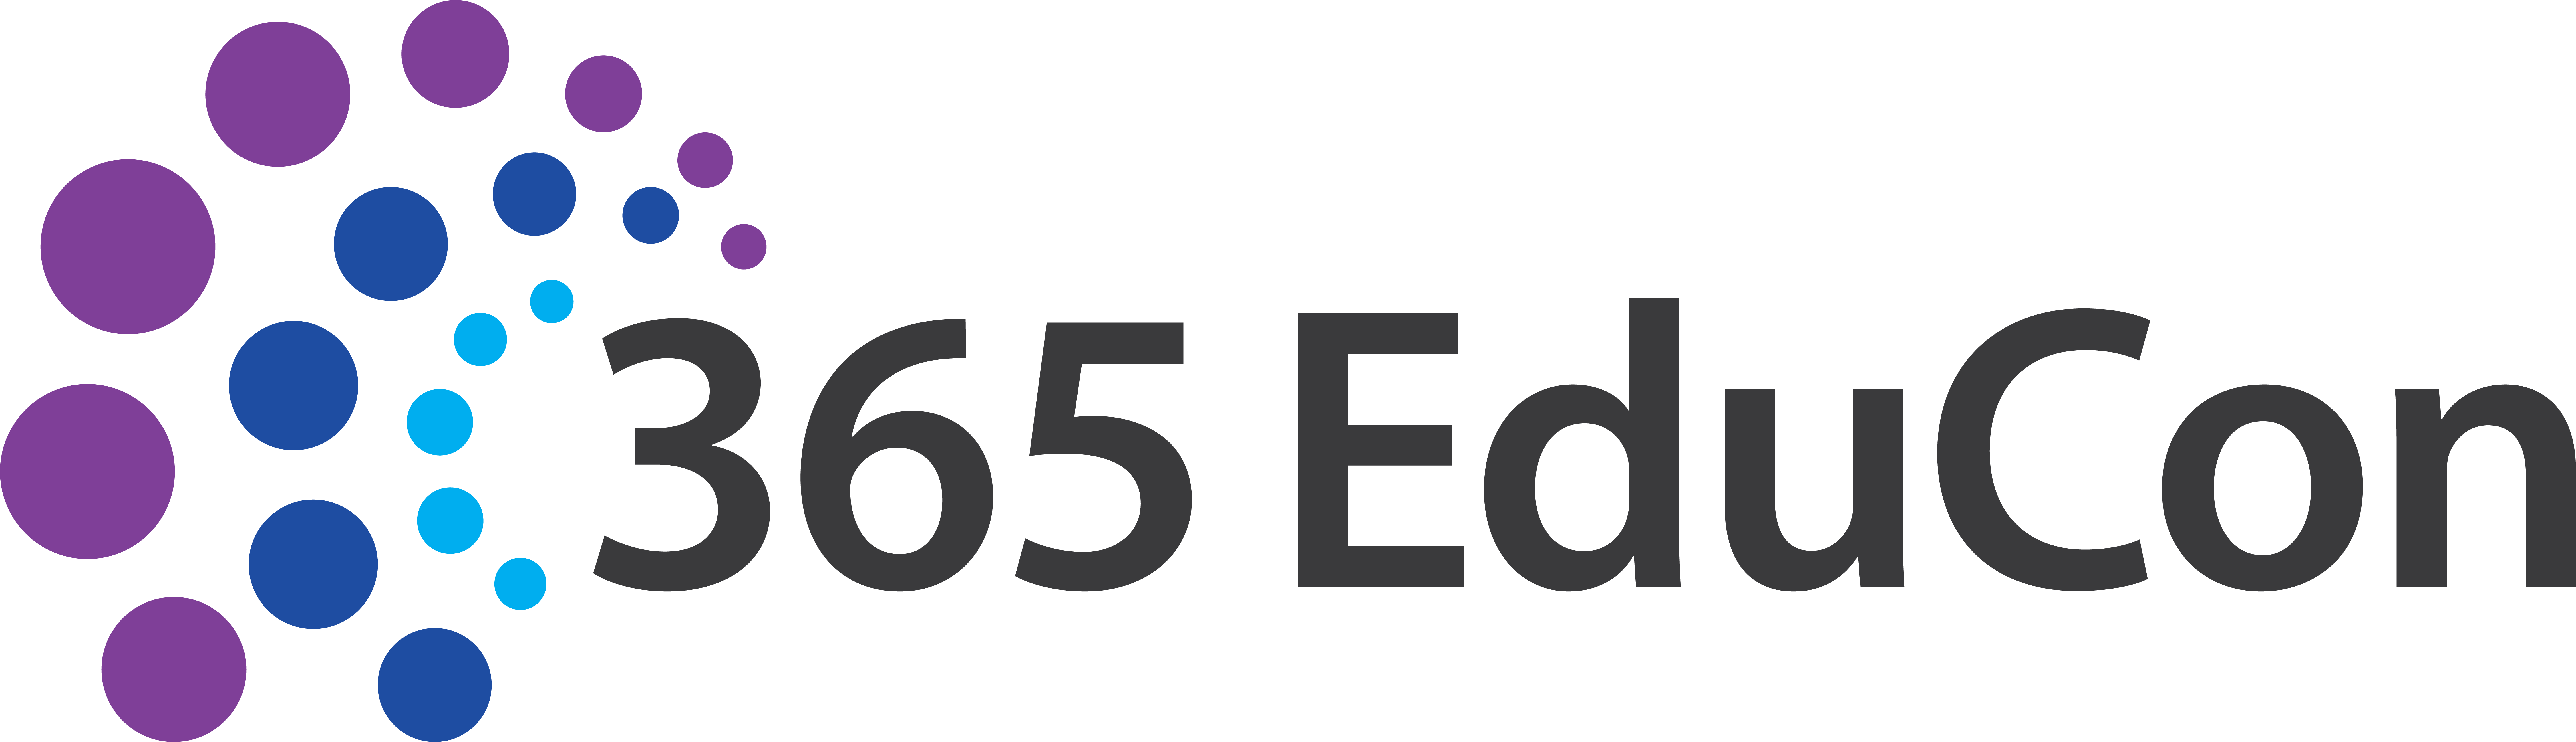 365 EduCon DC - a Microsoft 365 Conference